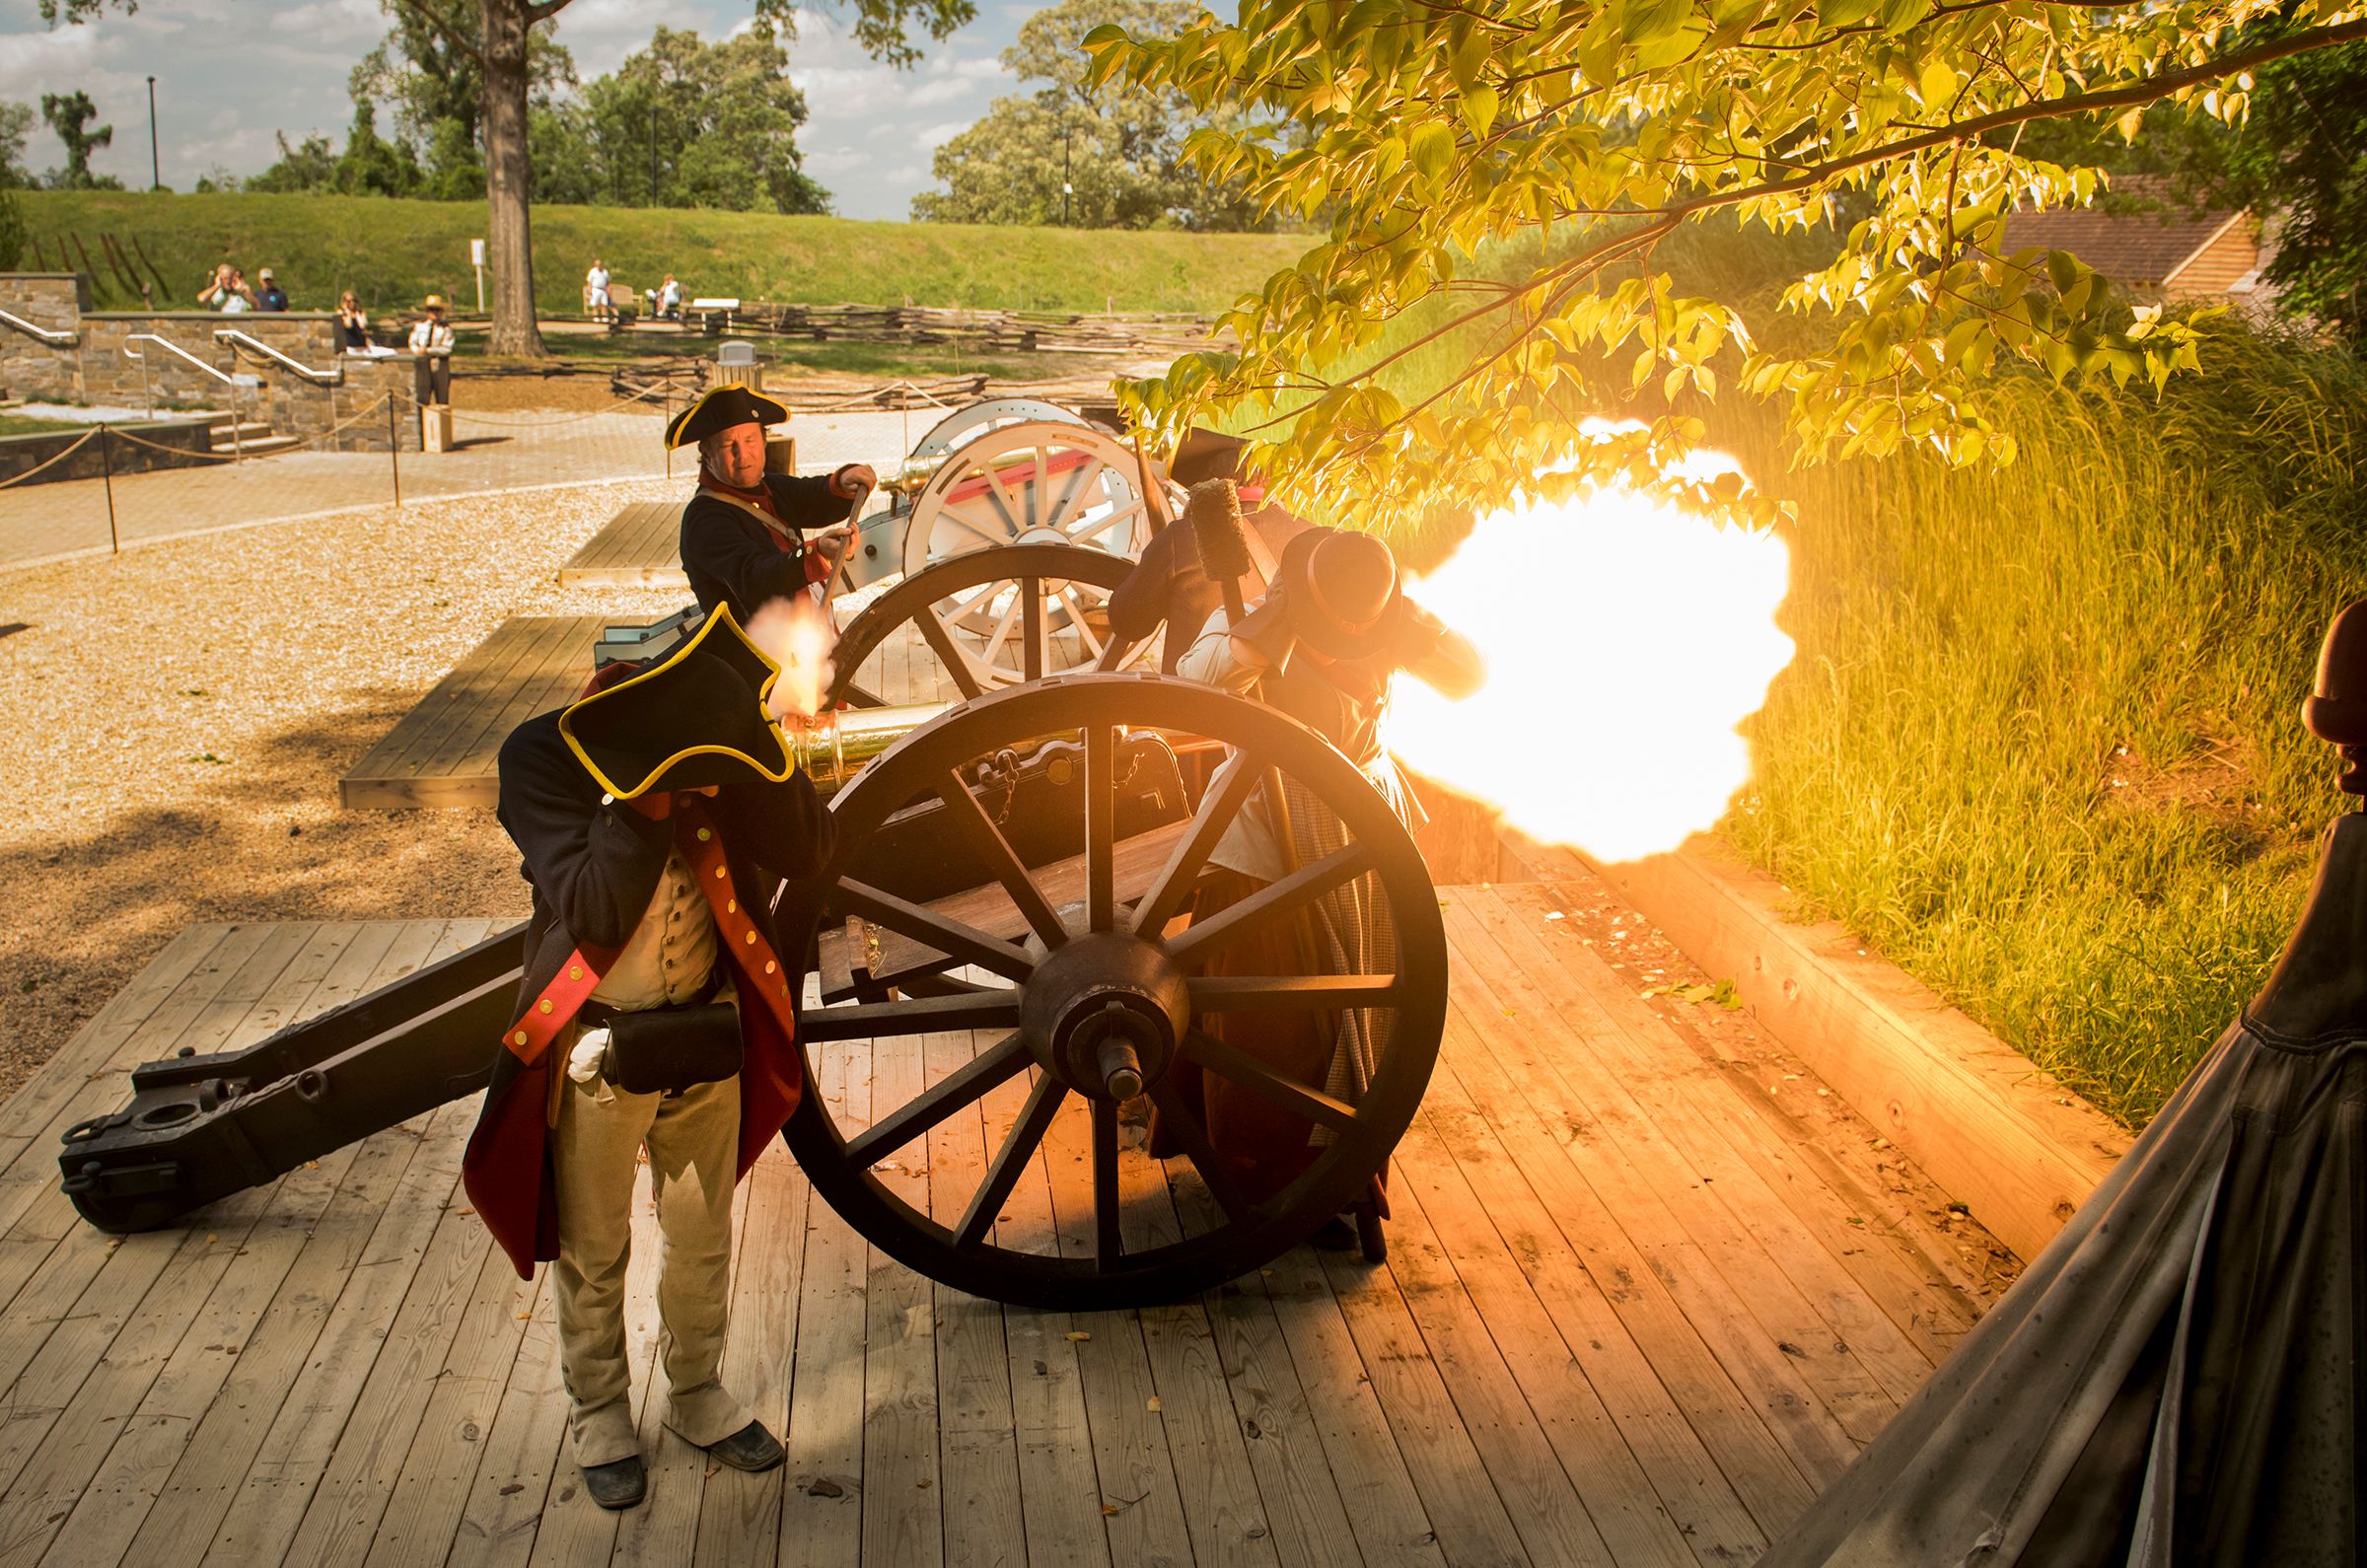 Artillery at American Revolution Museum at Yorktown